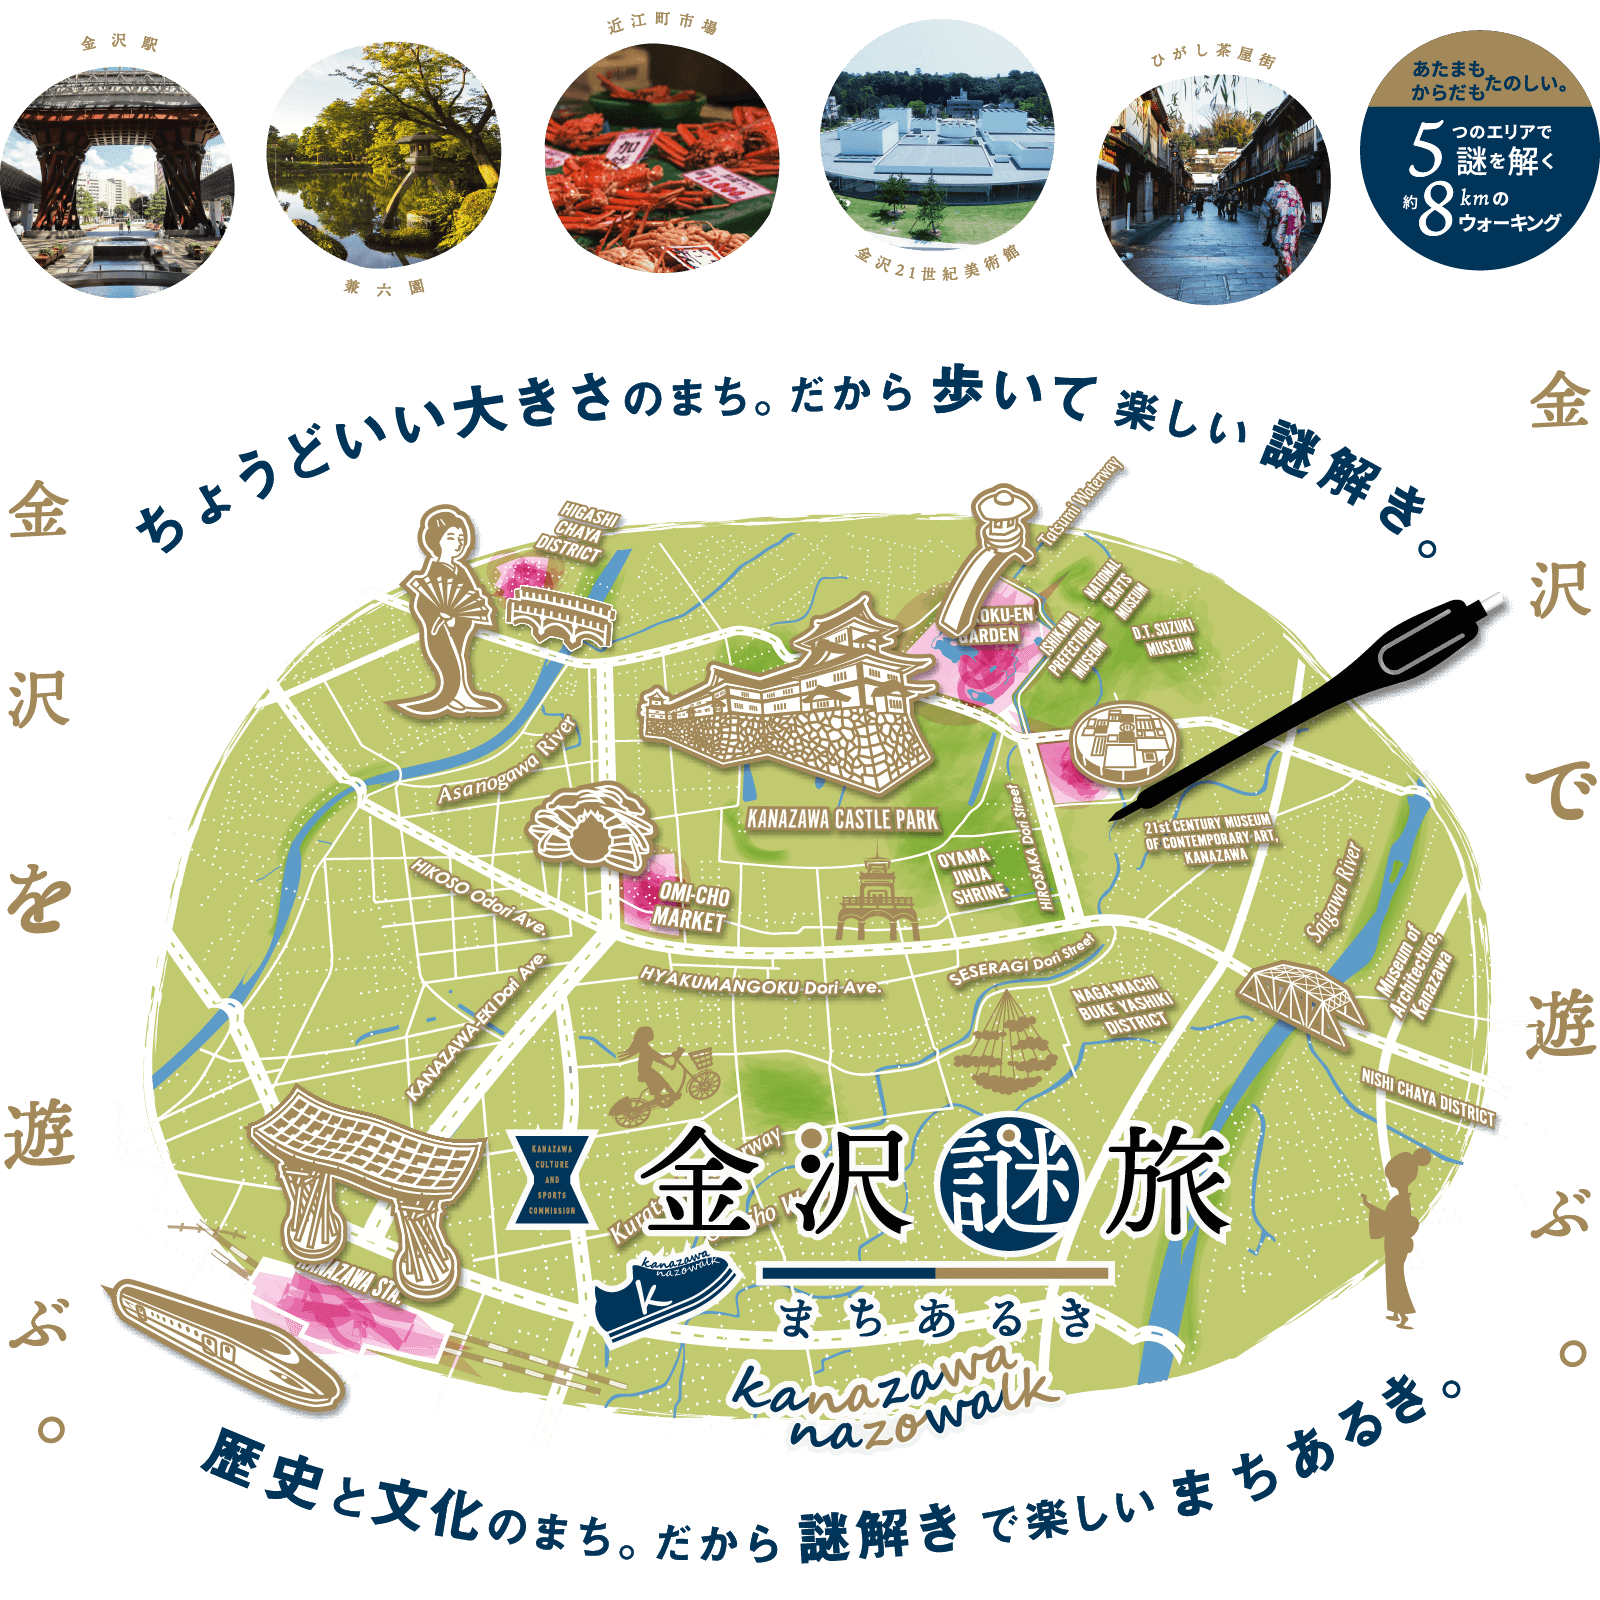 新しい観光体験 金沢謎旅まちあるき 金沢文化スポーツコミッション